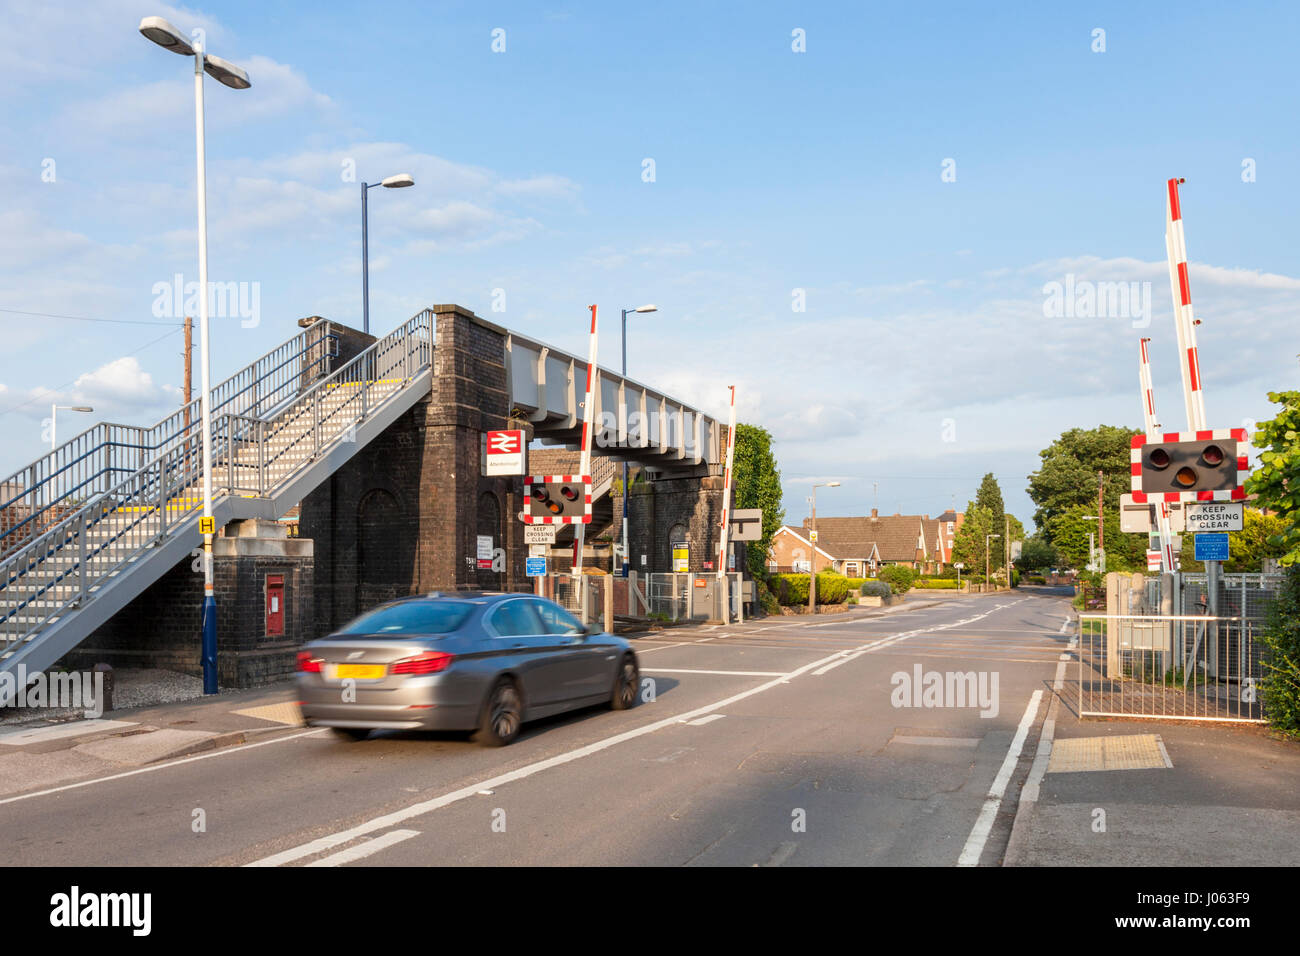 Paso a nivel con las barreras levantadas y la conducción de automóviles a través de Attenborough, Estación de Ferrocarril, Nottinghamshire, Inglaterra, Reino Unido. Foto de stock